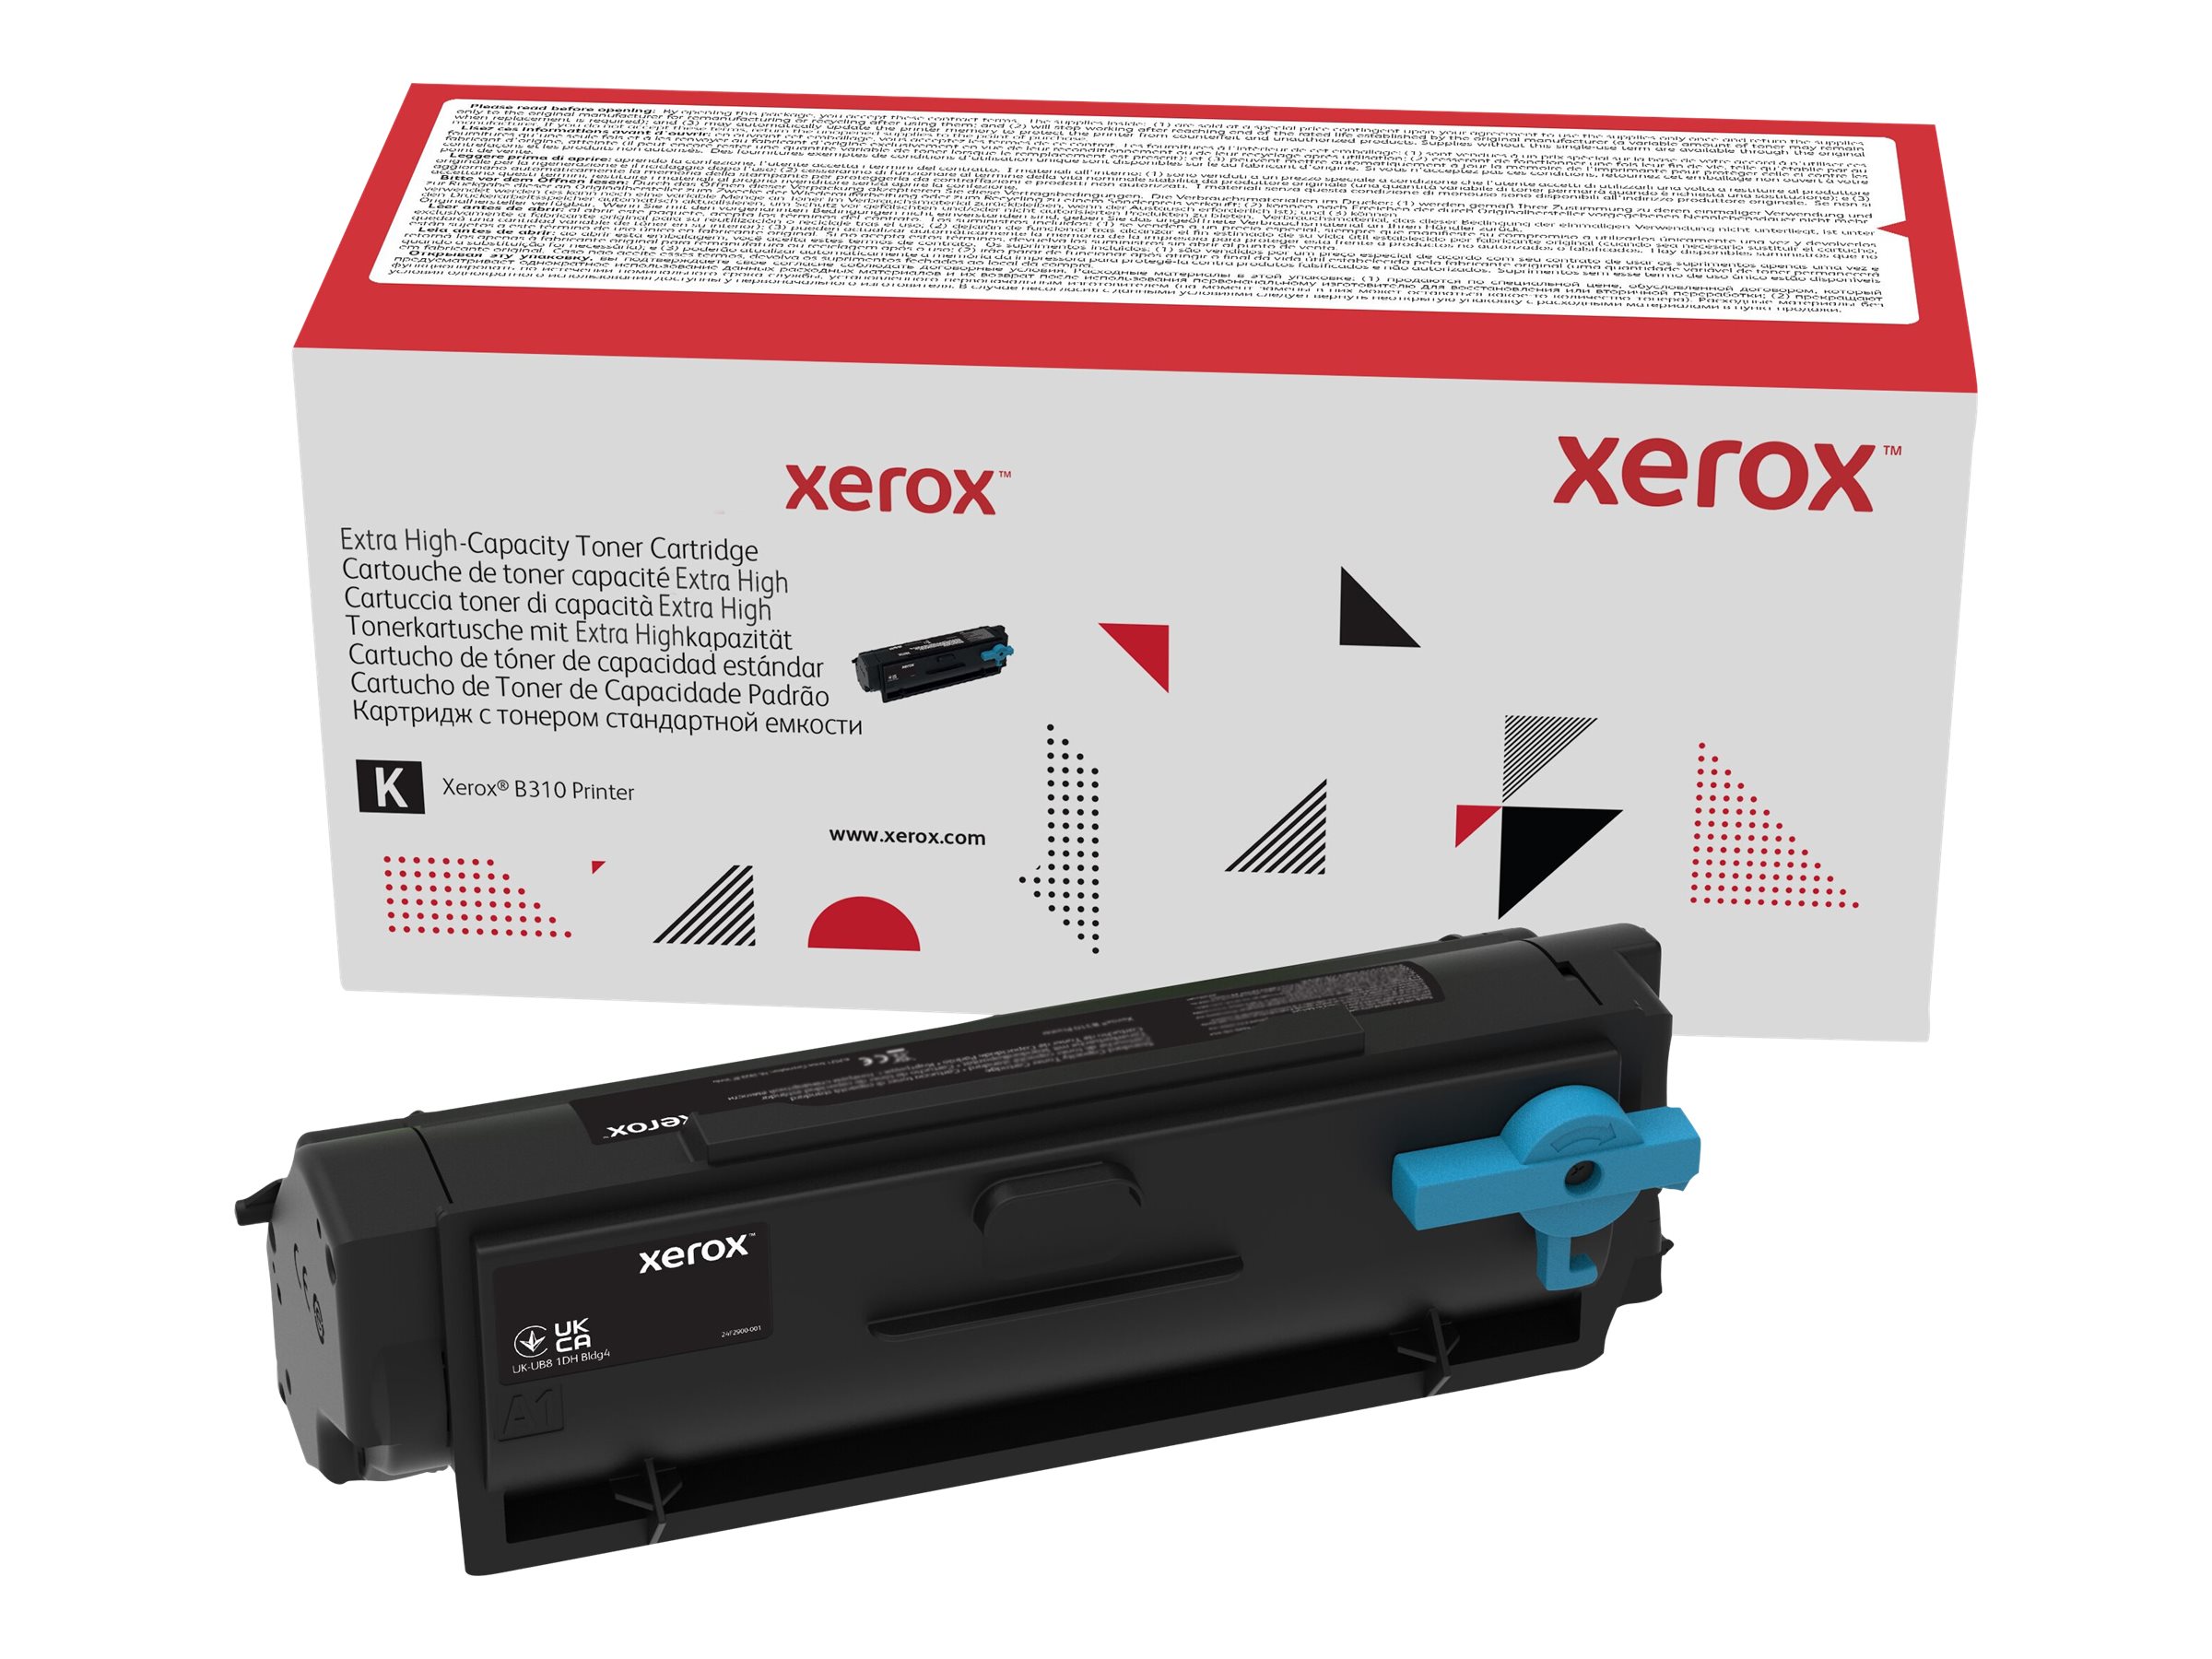 Xerox - Capacité très élevée - noir - original - cartouche de toner - pour Xerox B305, B310, B315 - 006R04378 - Cartouches de toner